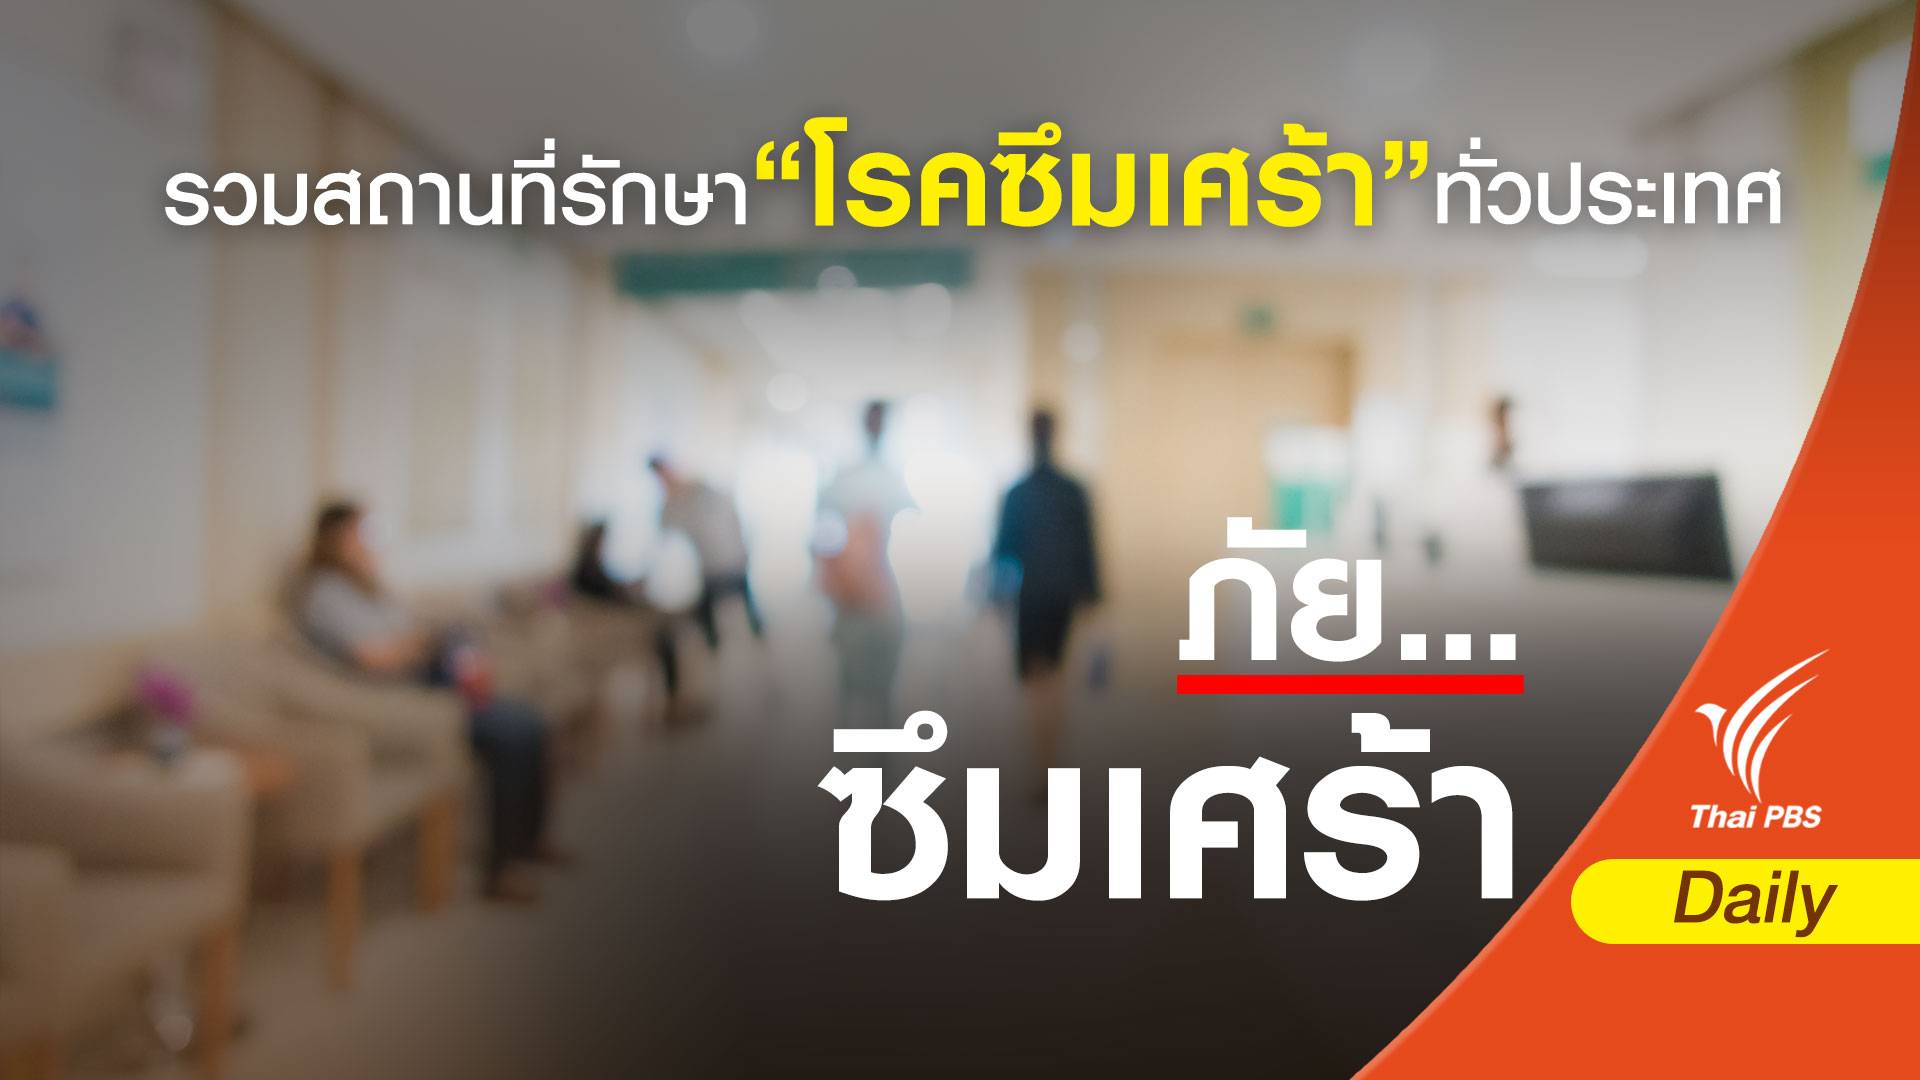 เครียด - ซึมเศร้า รักษาที่ไหน? | Thai Pbs News ข่าวไทยพีบีเอส